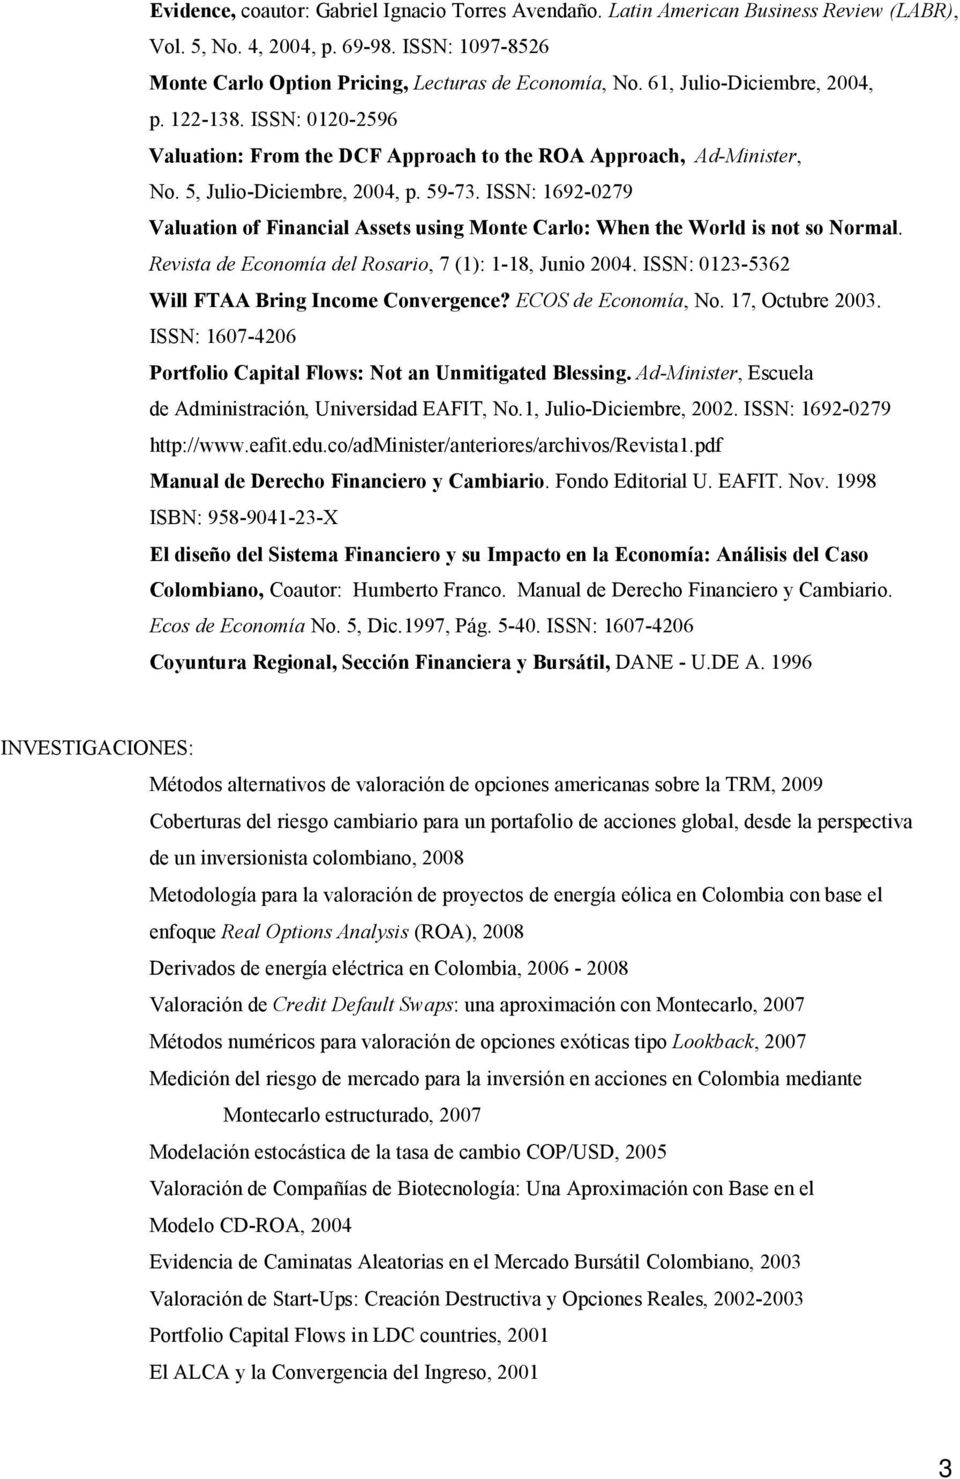 ISSN: 1692-0279 Valuation of Financial Assets using Monte Carlo: When the World is not so Normal. Revista de Economía del Rosario, 7 (1): 1-18, Junio 2004.